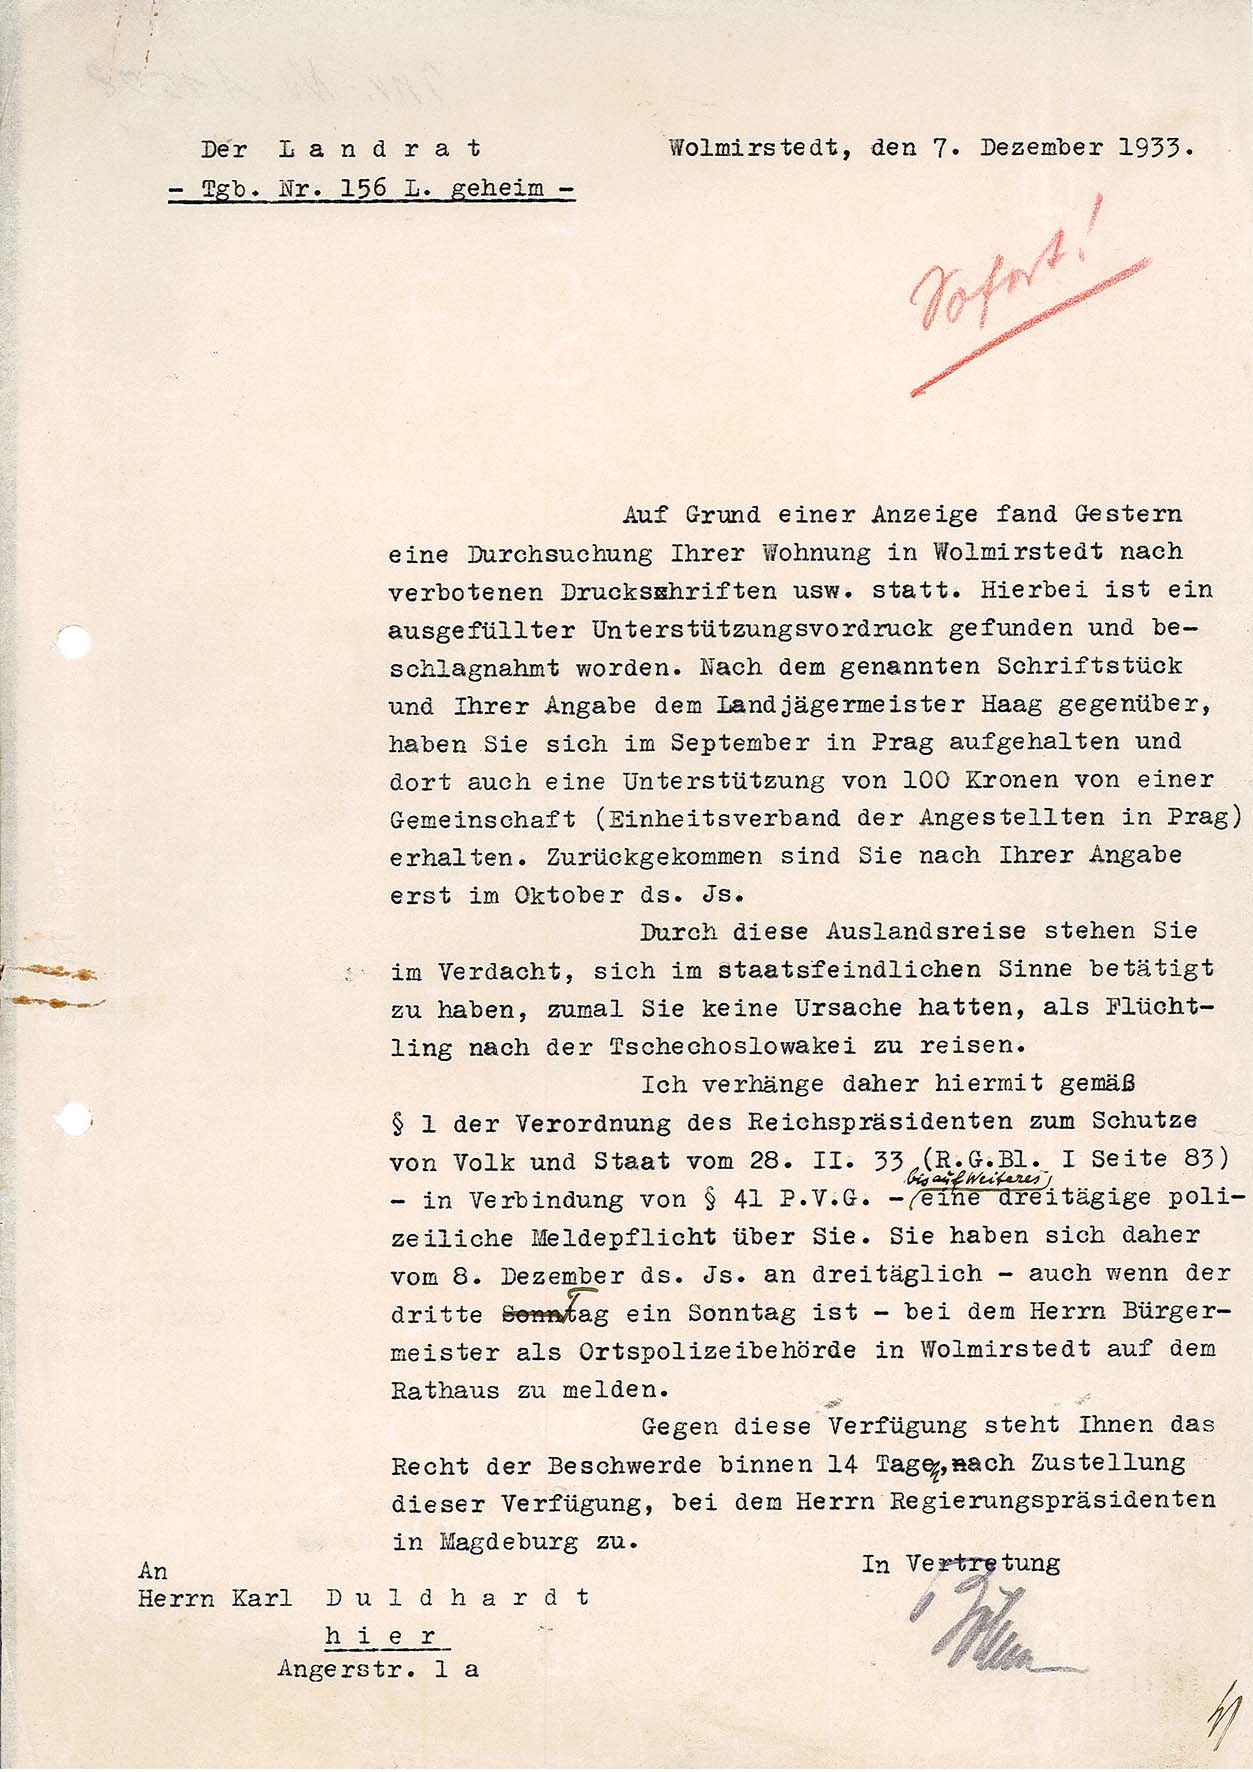 Informationsschreiben zur dreittäglichen Meldepflicht Karl Duldhardts bei der Polizei Wolmirstedt, 7. Dezember 1933 (Museum Wolmirstedt RR-F)